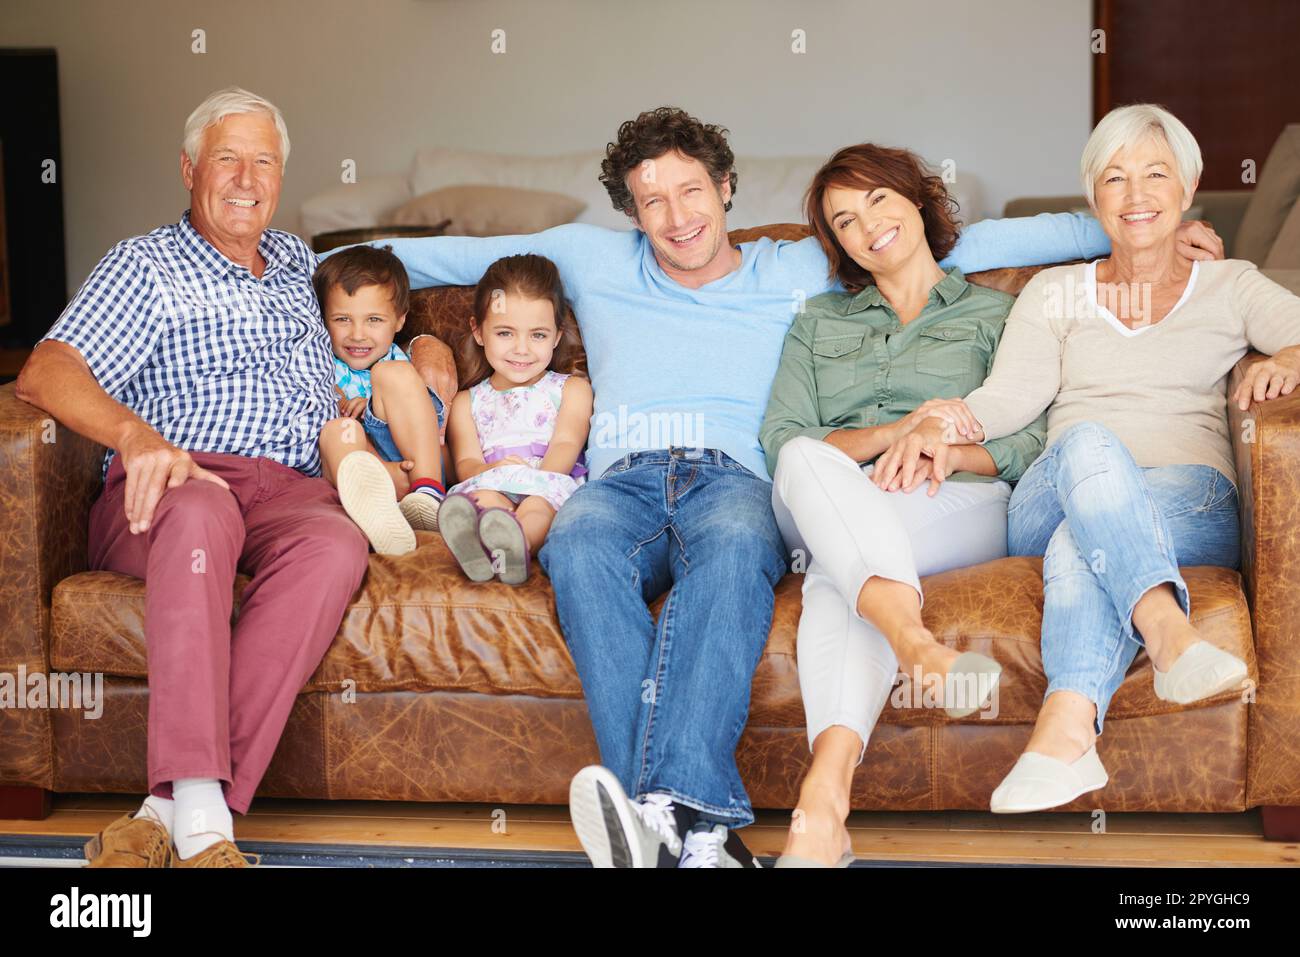 Zeit mit der Familie verbringen. Eine glückliche Familie mehrerer Generationen, die auf dem Sofa zusammensitzt. Stockfoto